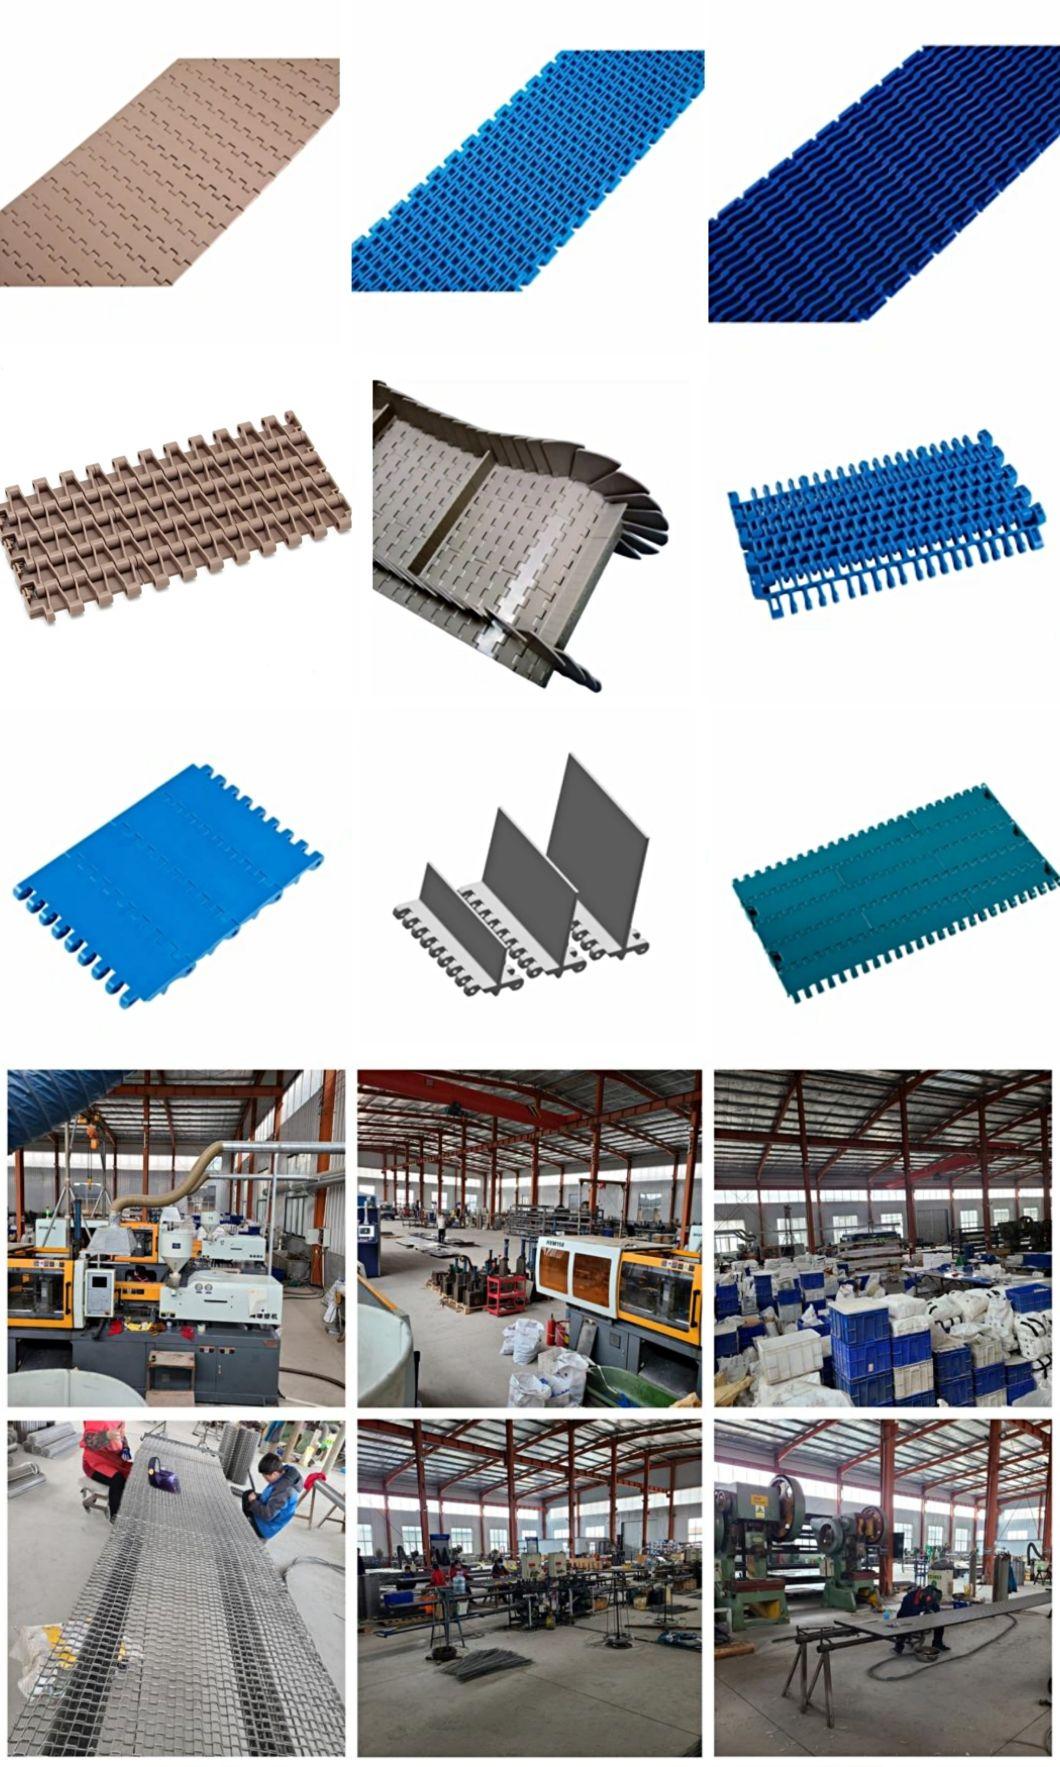 ODM Metal Stainless Steel Wire Mesh Conveyor Belt for Food Industry